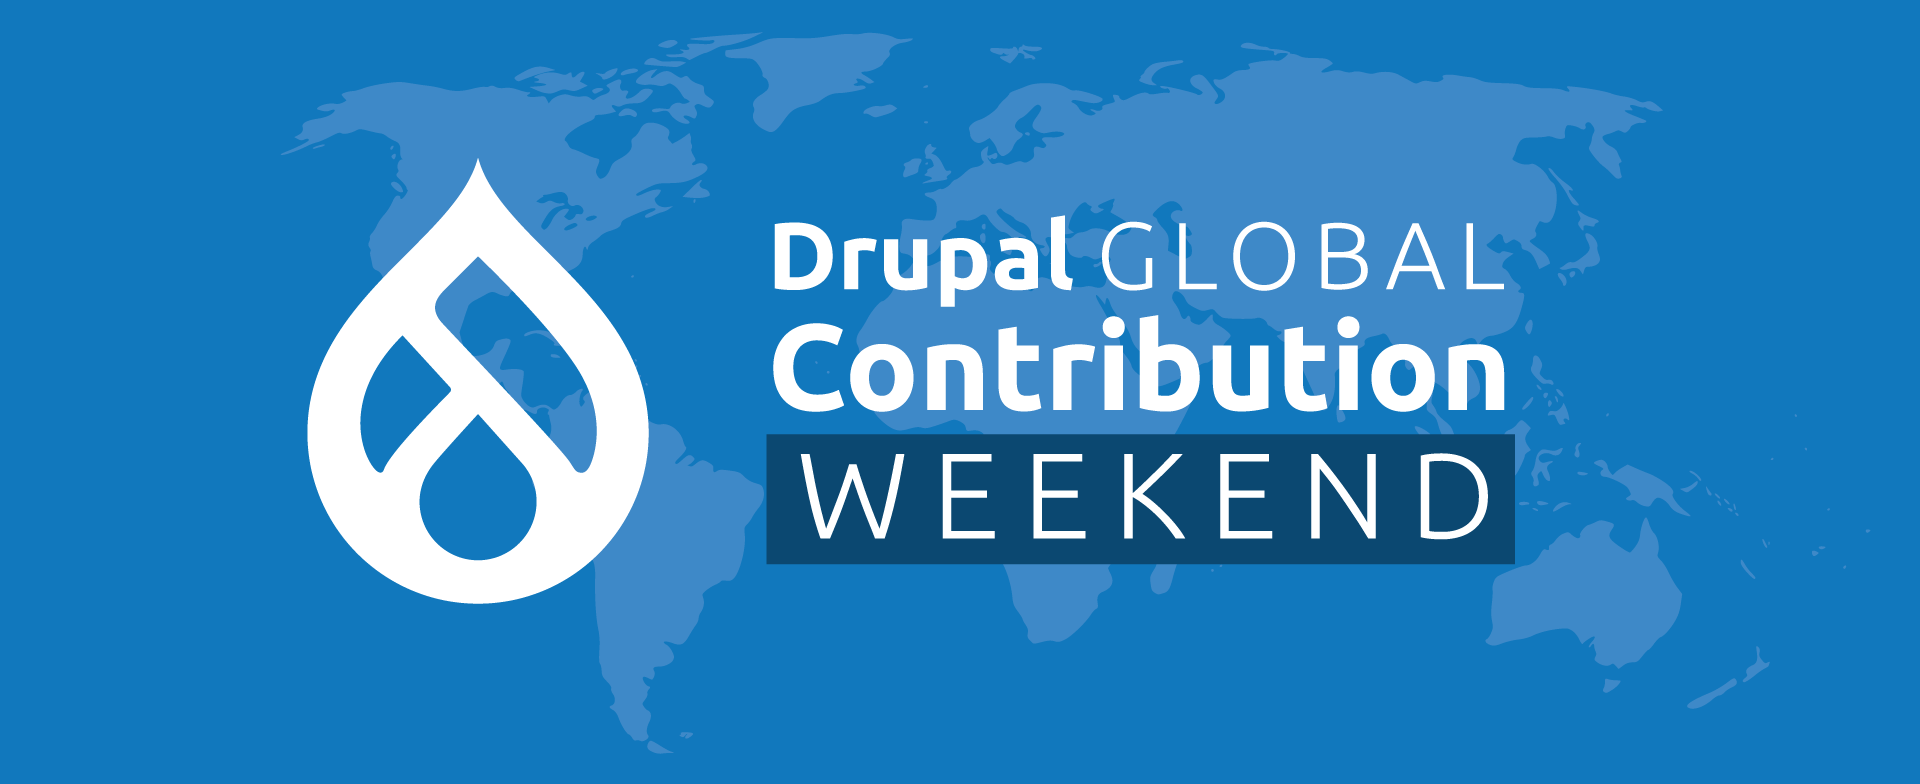 Drupal signet, Drupal Global Sprint Weekend, blue background with world map